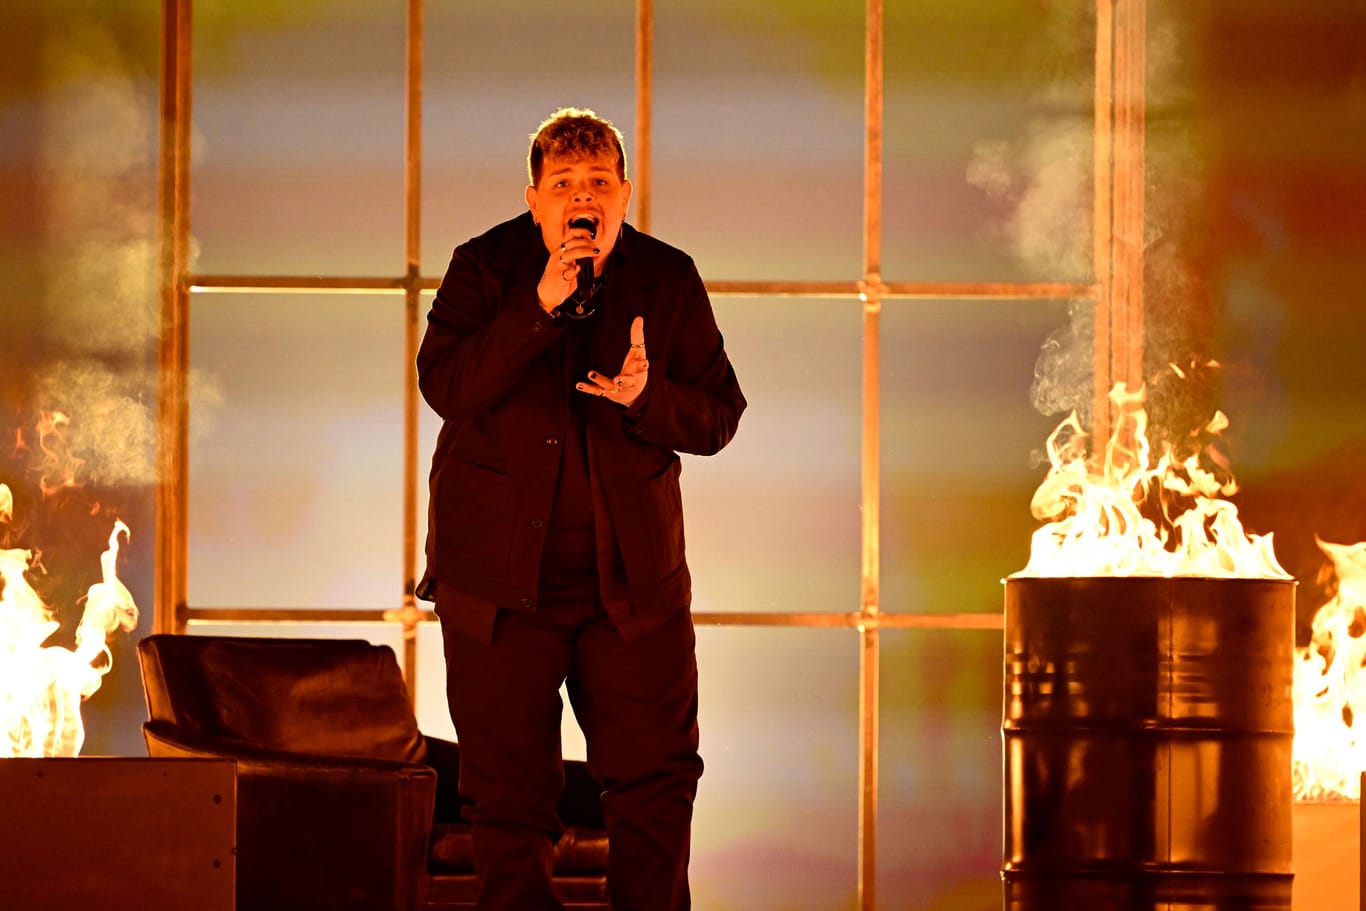 Sänger Isaak beim Eurovision Song Contest: Mit seinem Song "On The Run" wird der Ostwestfale vermutlich keine Chance auf den Sieg haben.